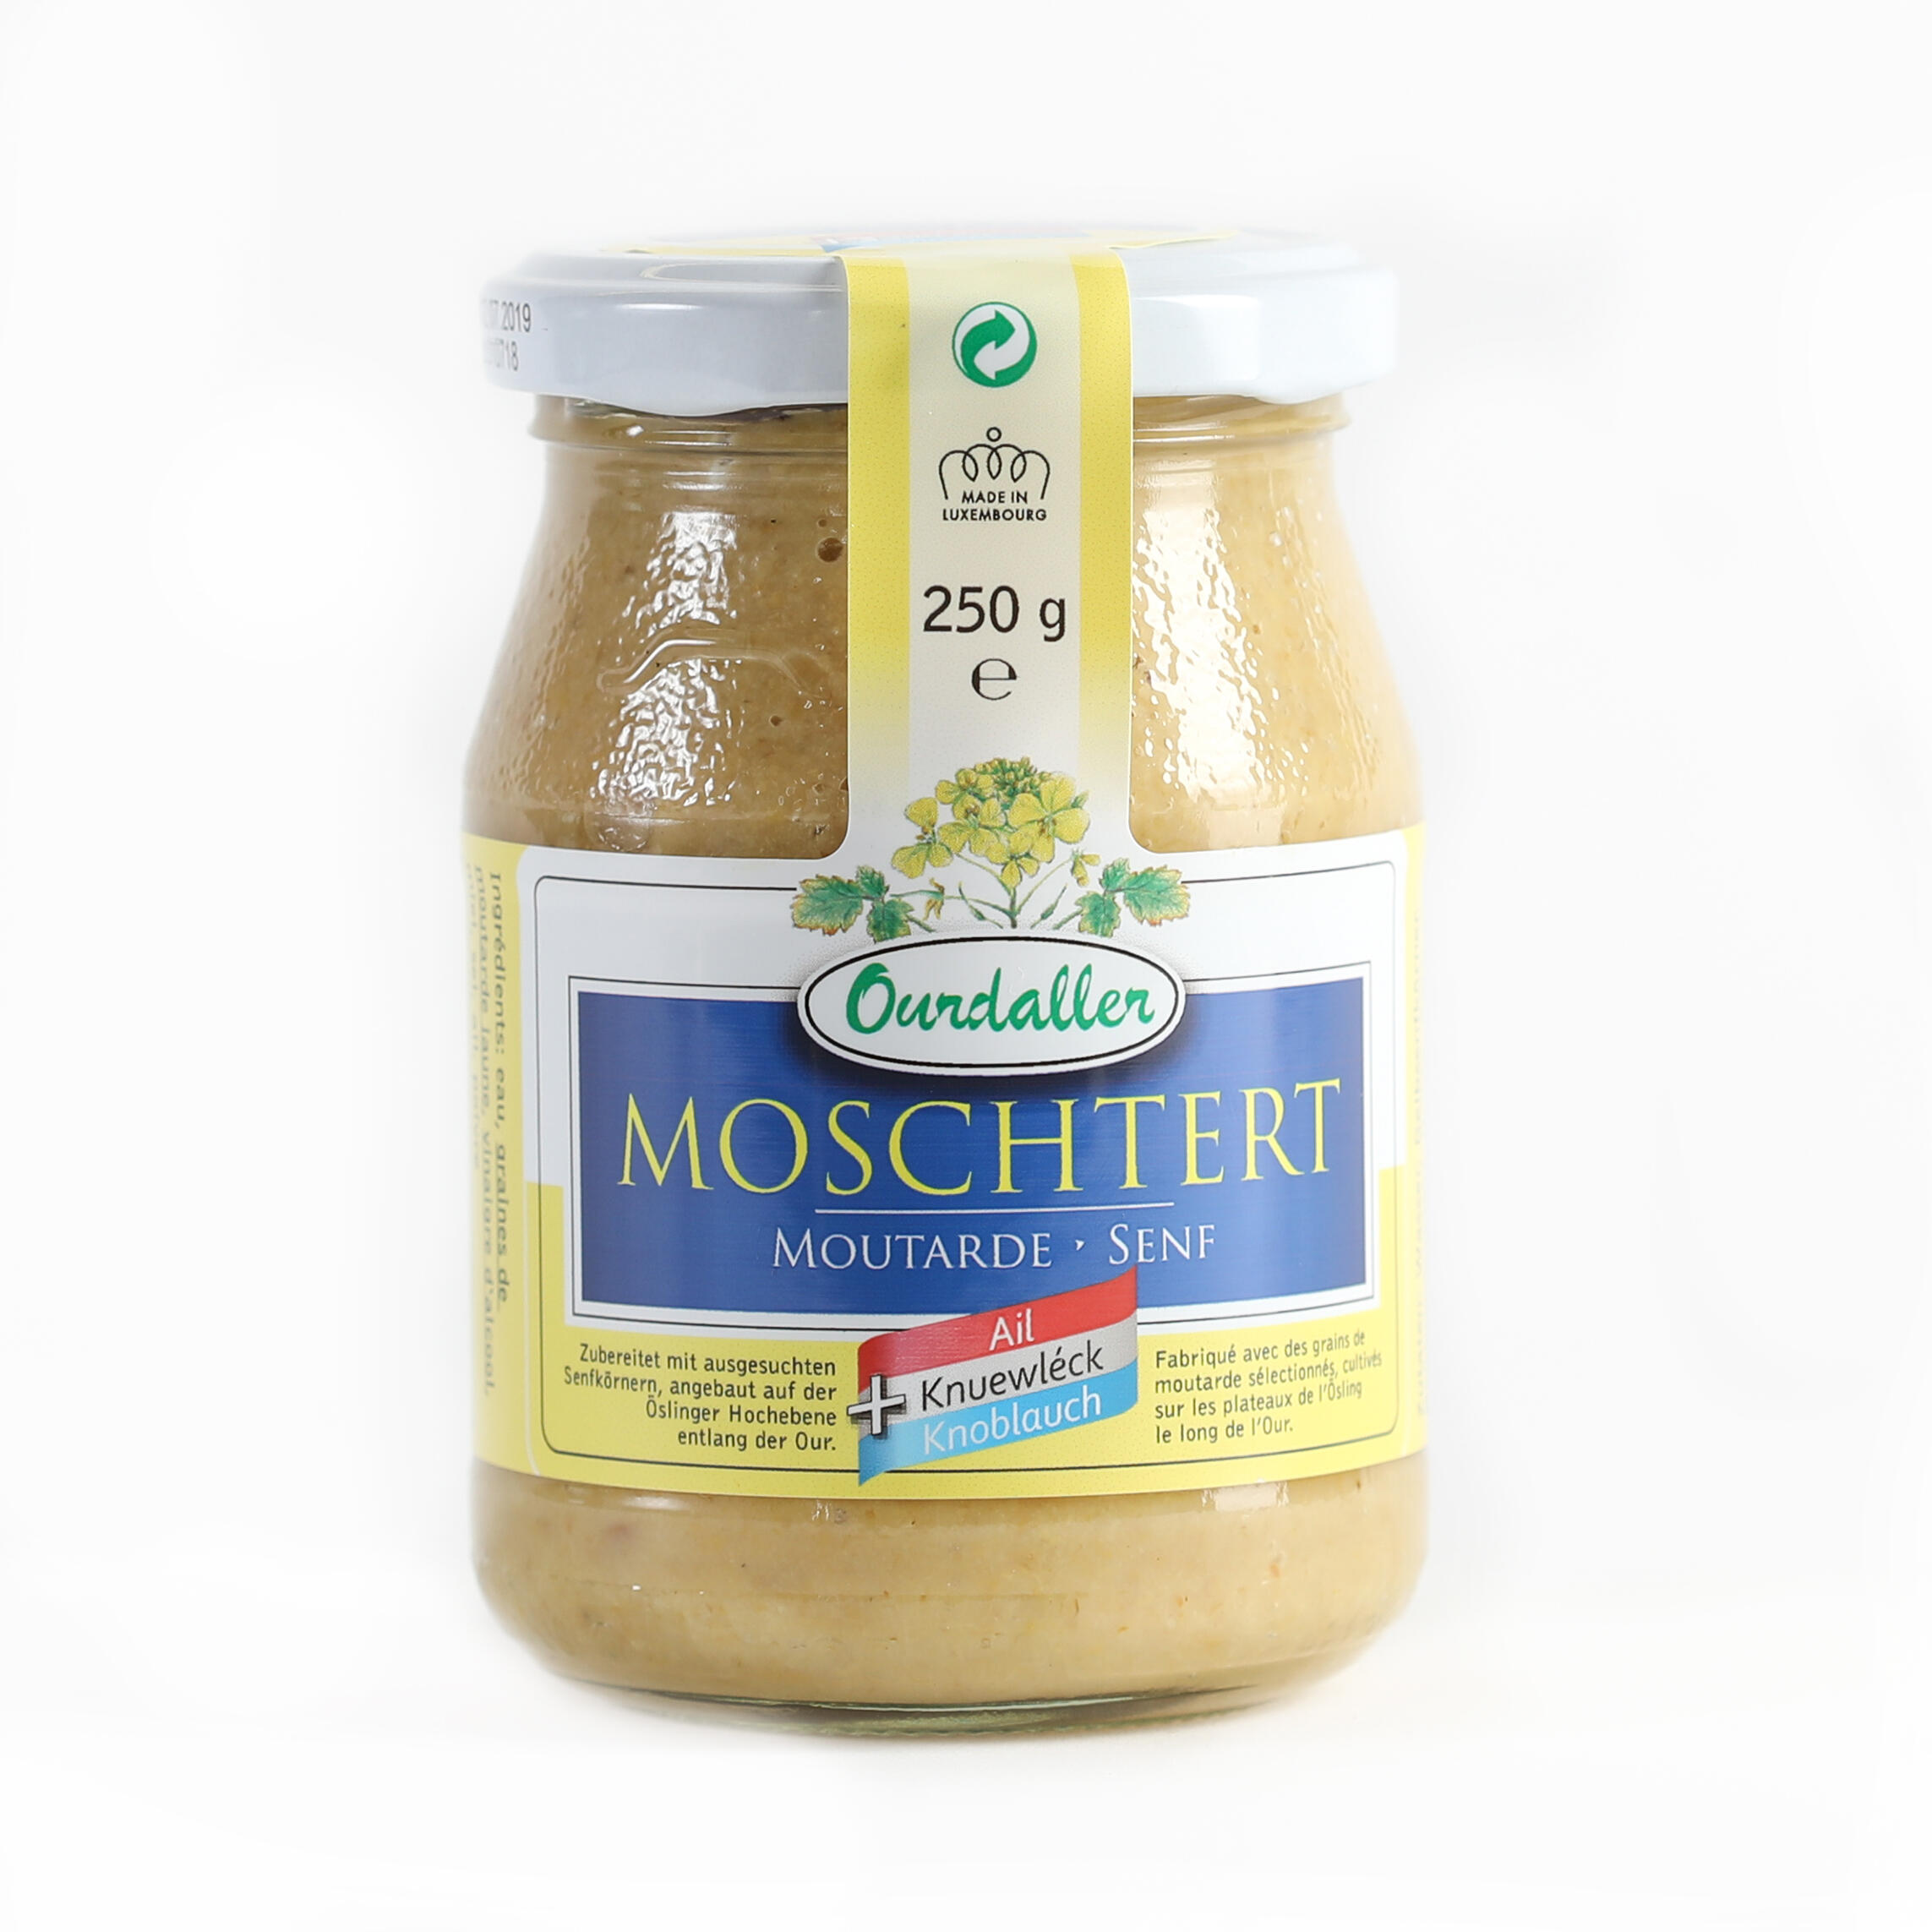 Moschtert - Mustard "KNOBLAUCH